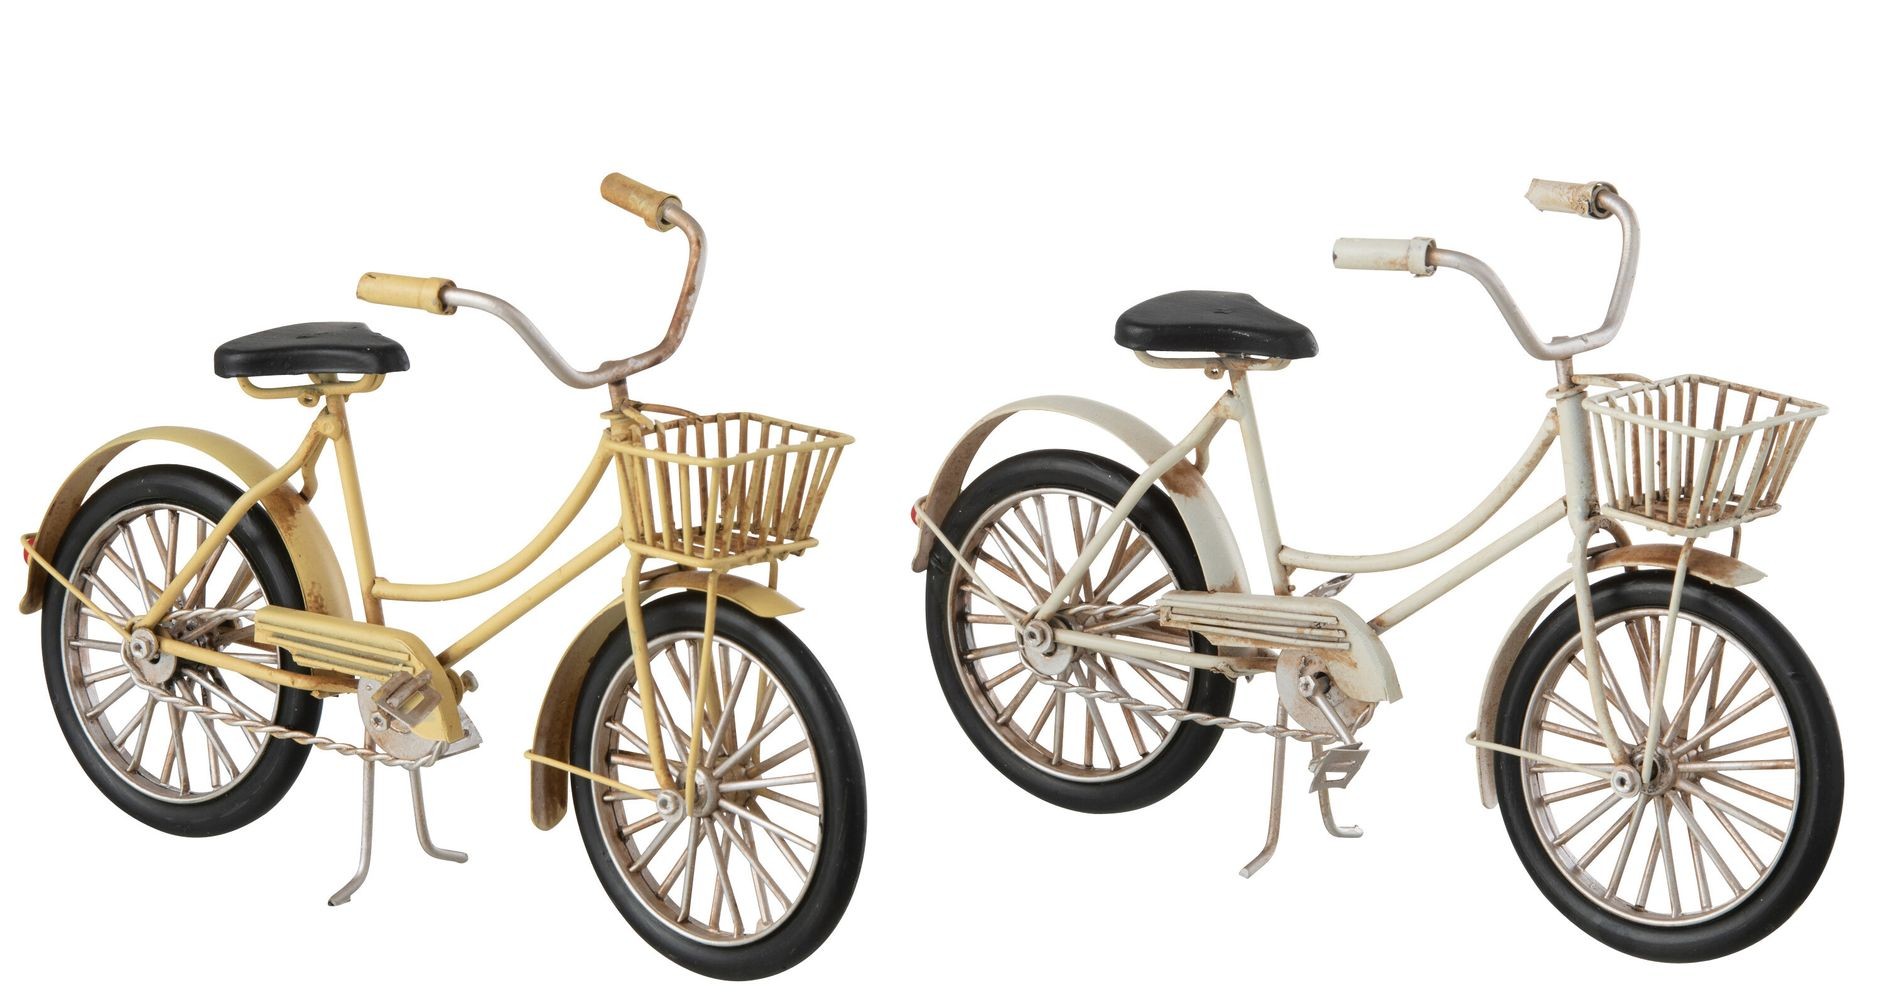 2ks béžový a žlutý antik kovový retro model kola Womens Bike - 23*8*12 cm 23647